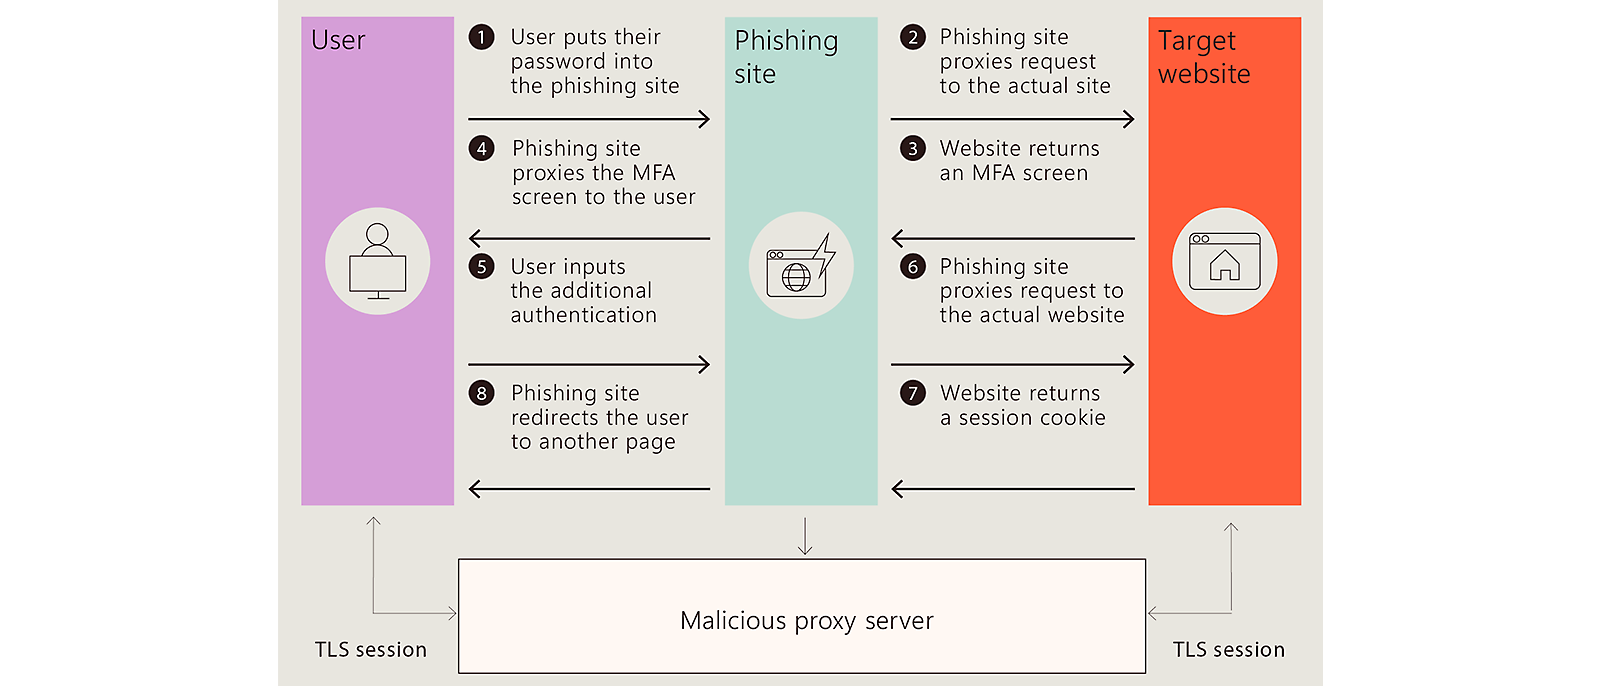 Scenariu de phishing: Utilizatorul introduce parola, MFA, redirecționat; proxy rău intenționat la mijloc